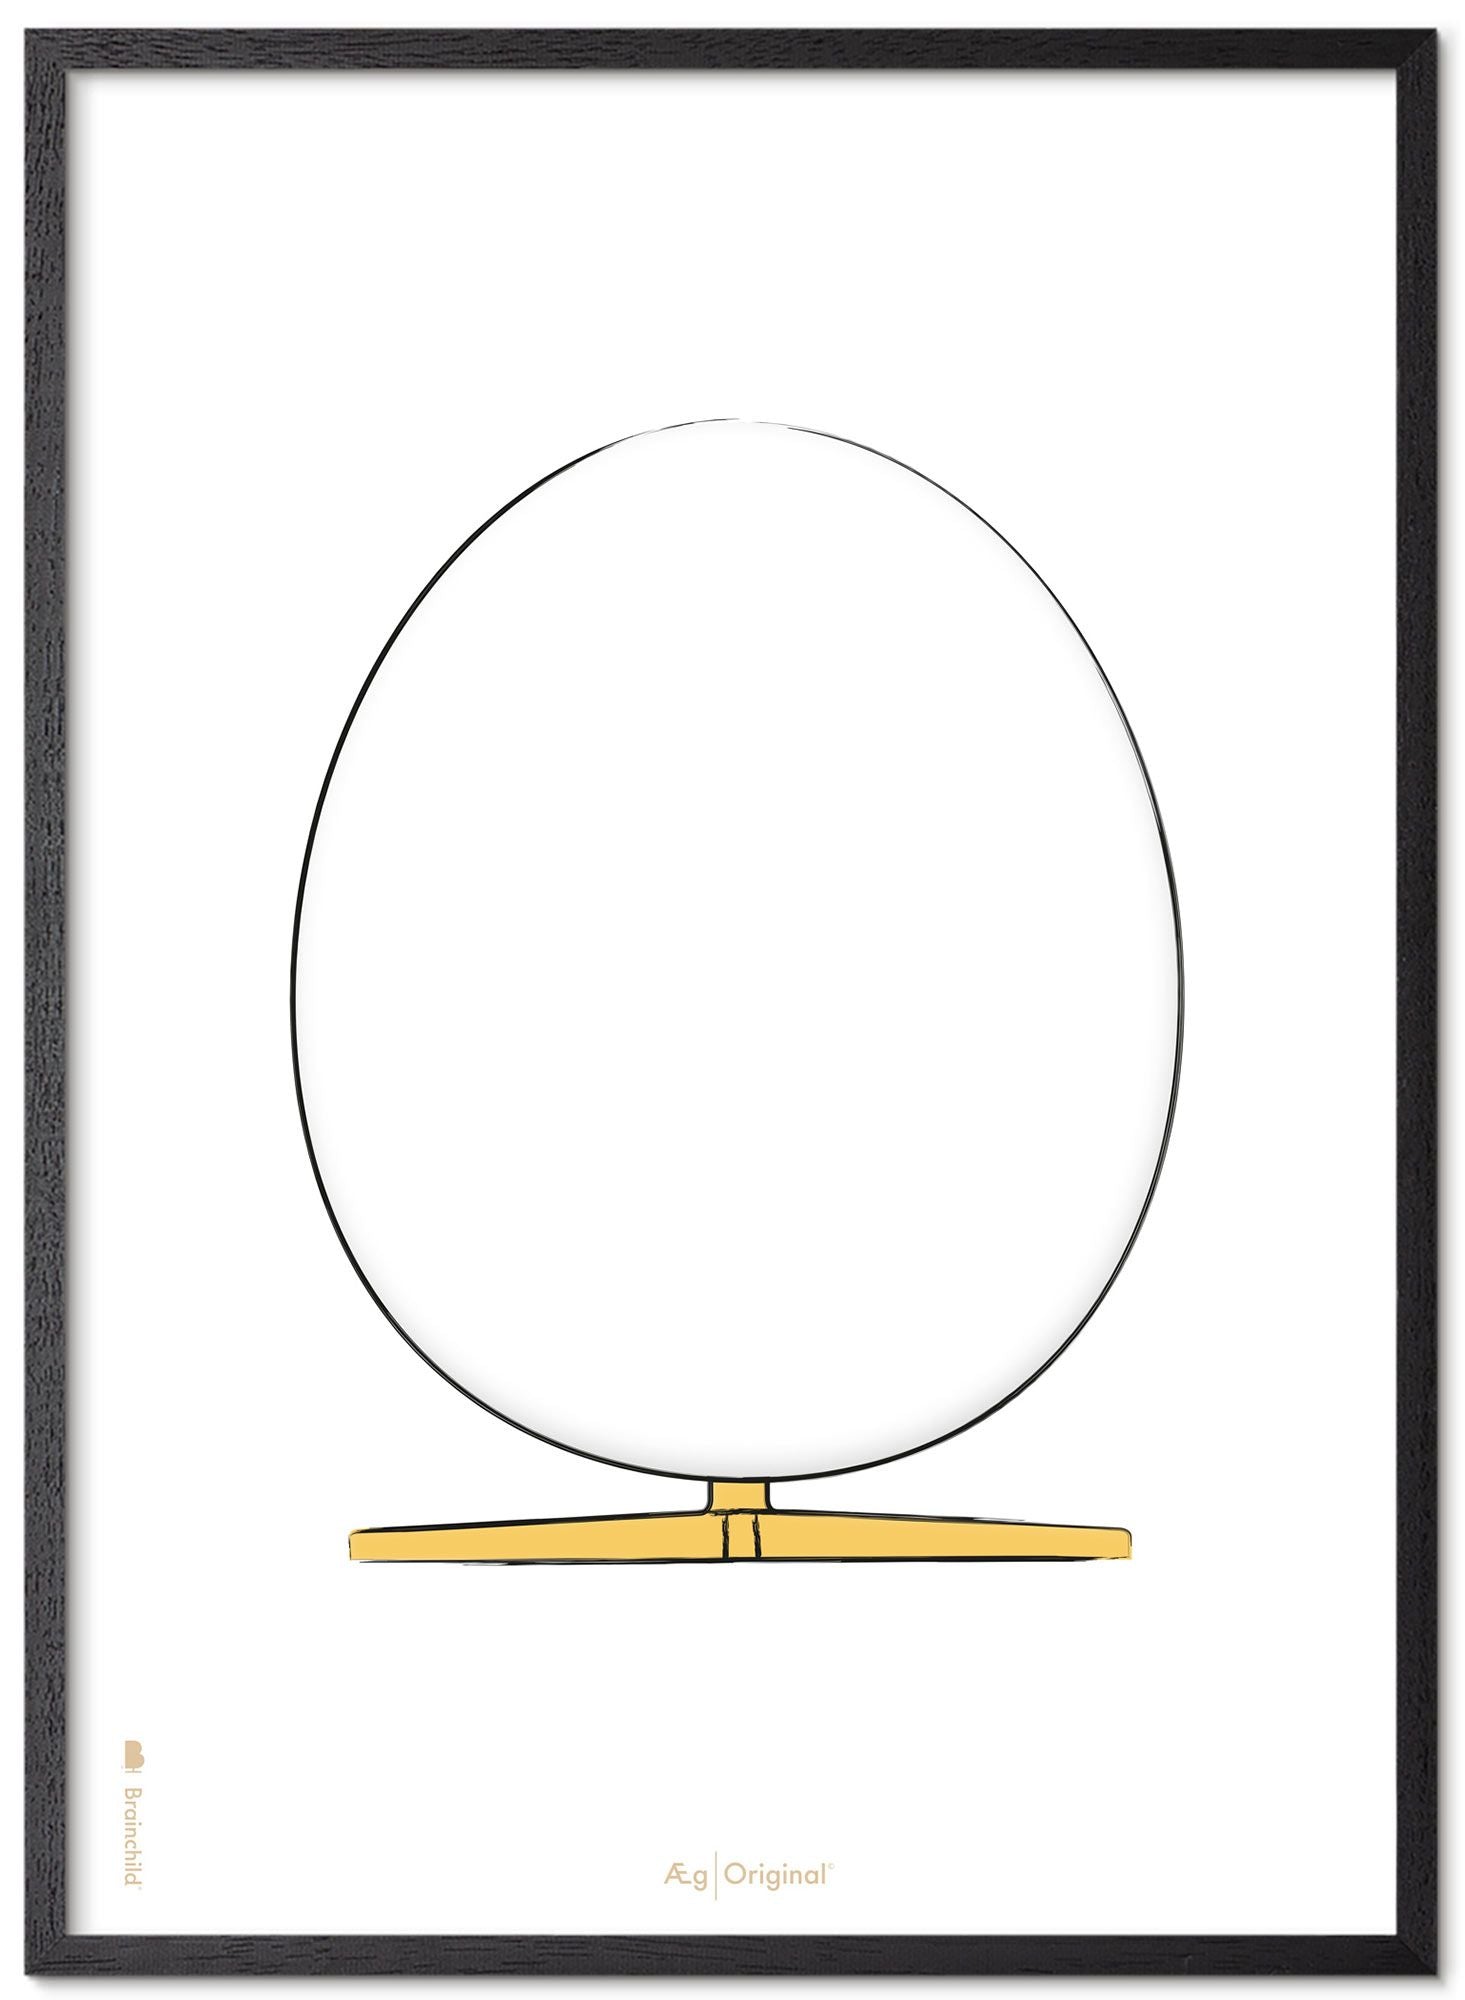 Prepare el marco de póster de boceto de diseño de huevo hecho de madera lacada negra 50x70 cm, fondo blanco